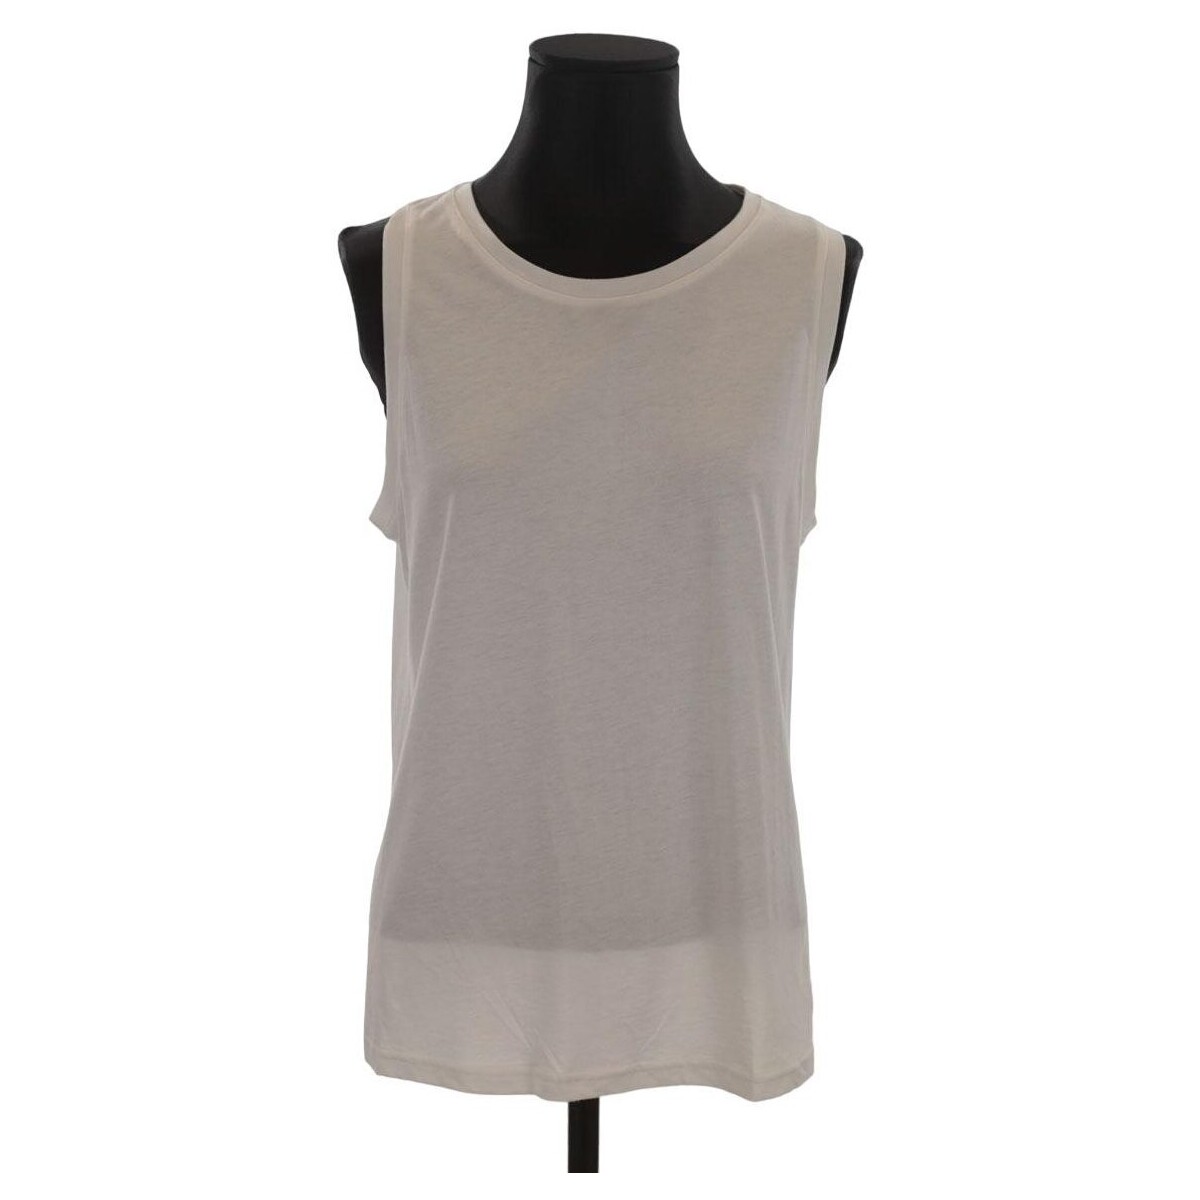 Vêtements Femme Débardeurs / T-shirts sans manche Claudie Pierlot Top en coton Blanc